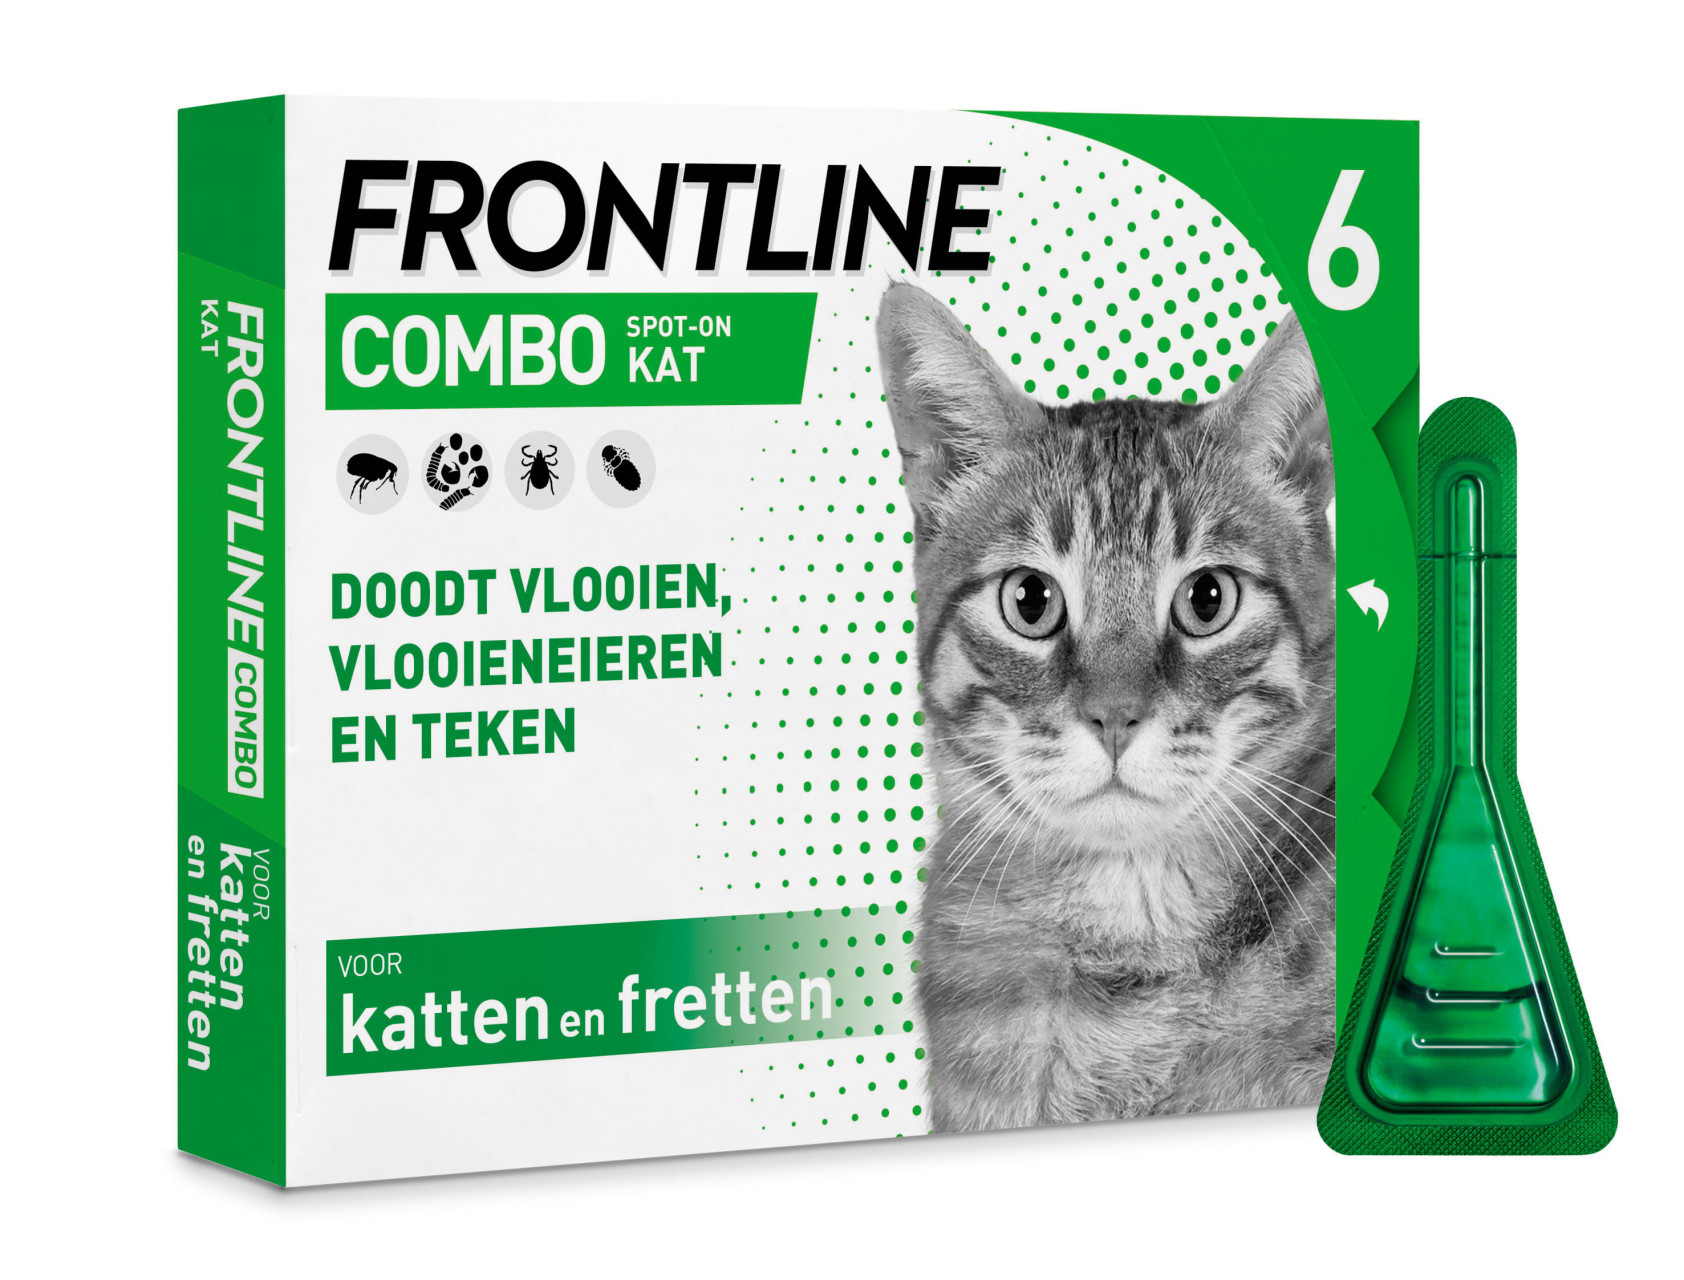 agentschap onwetendheid Vooruitgang Frontline Combo kat 6 pipetten | Hano voor uw dier